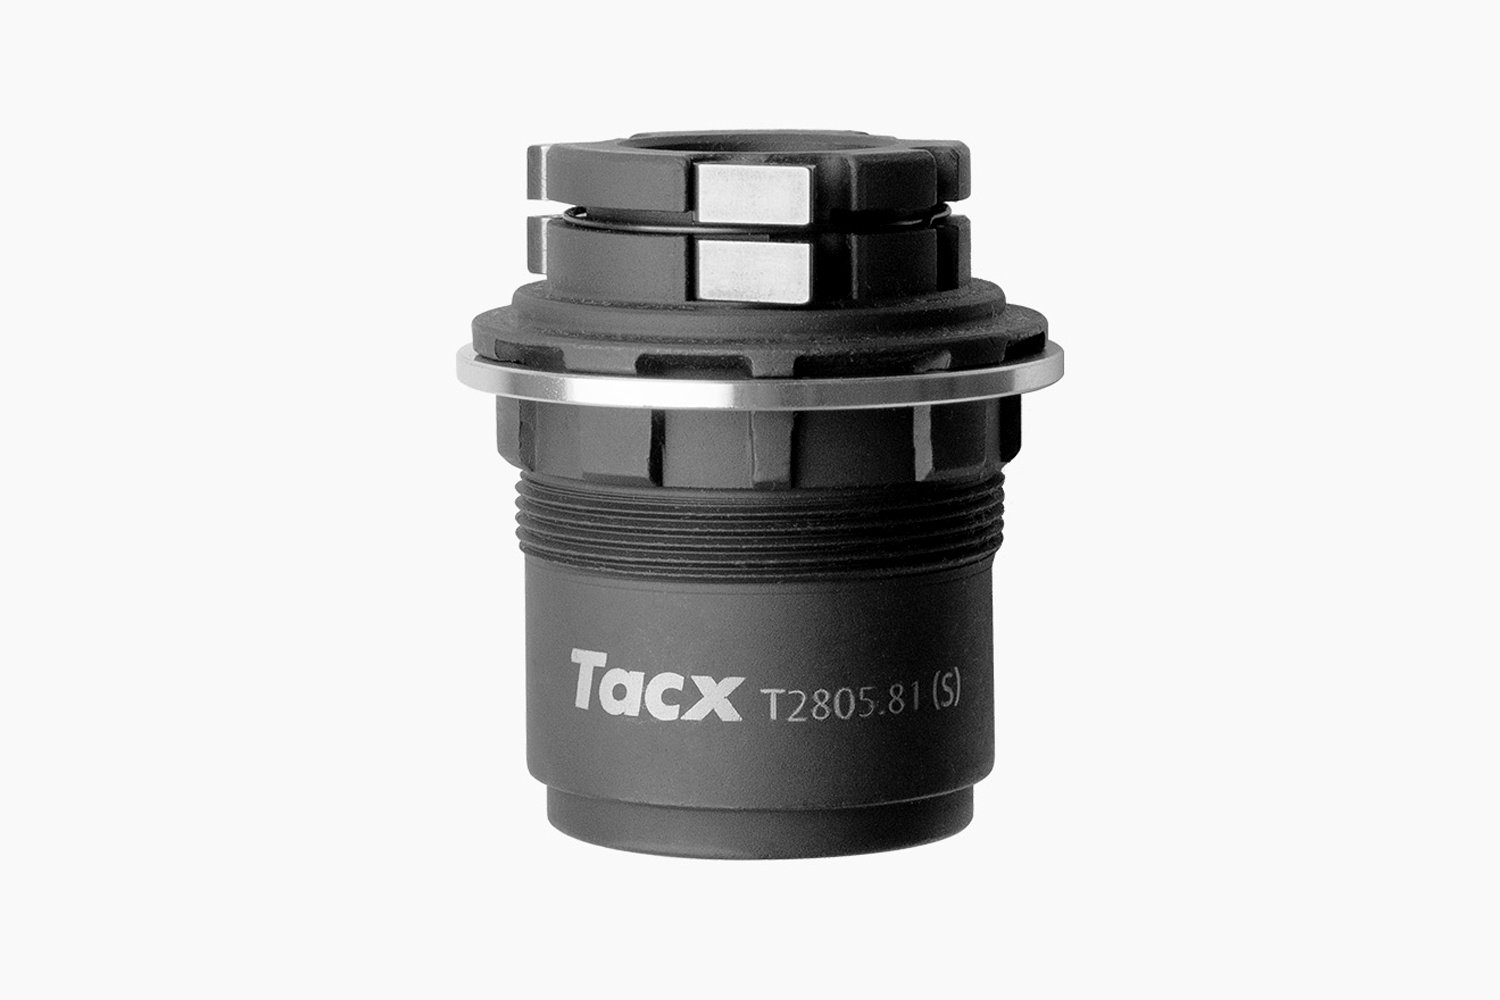 Барабан Tacx для кассеты SRAM XD-R, для Tacx, T2805.81 барабан кассеты mavic sram xx1 для колес 2012 2019 v2580101